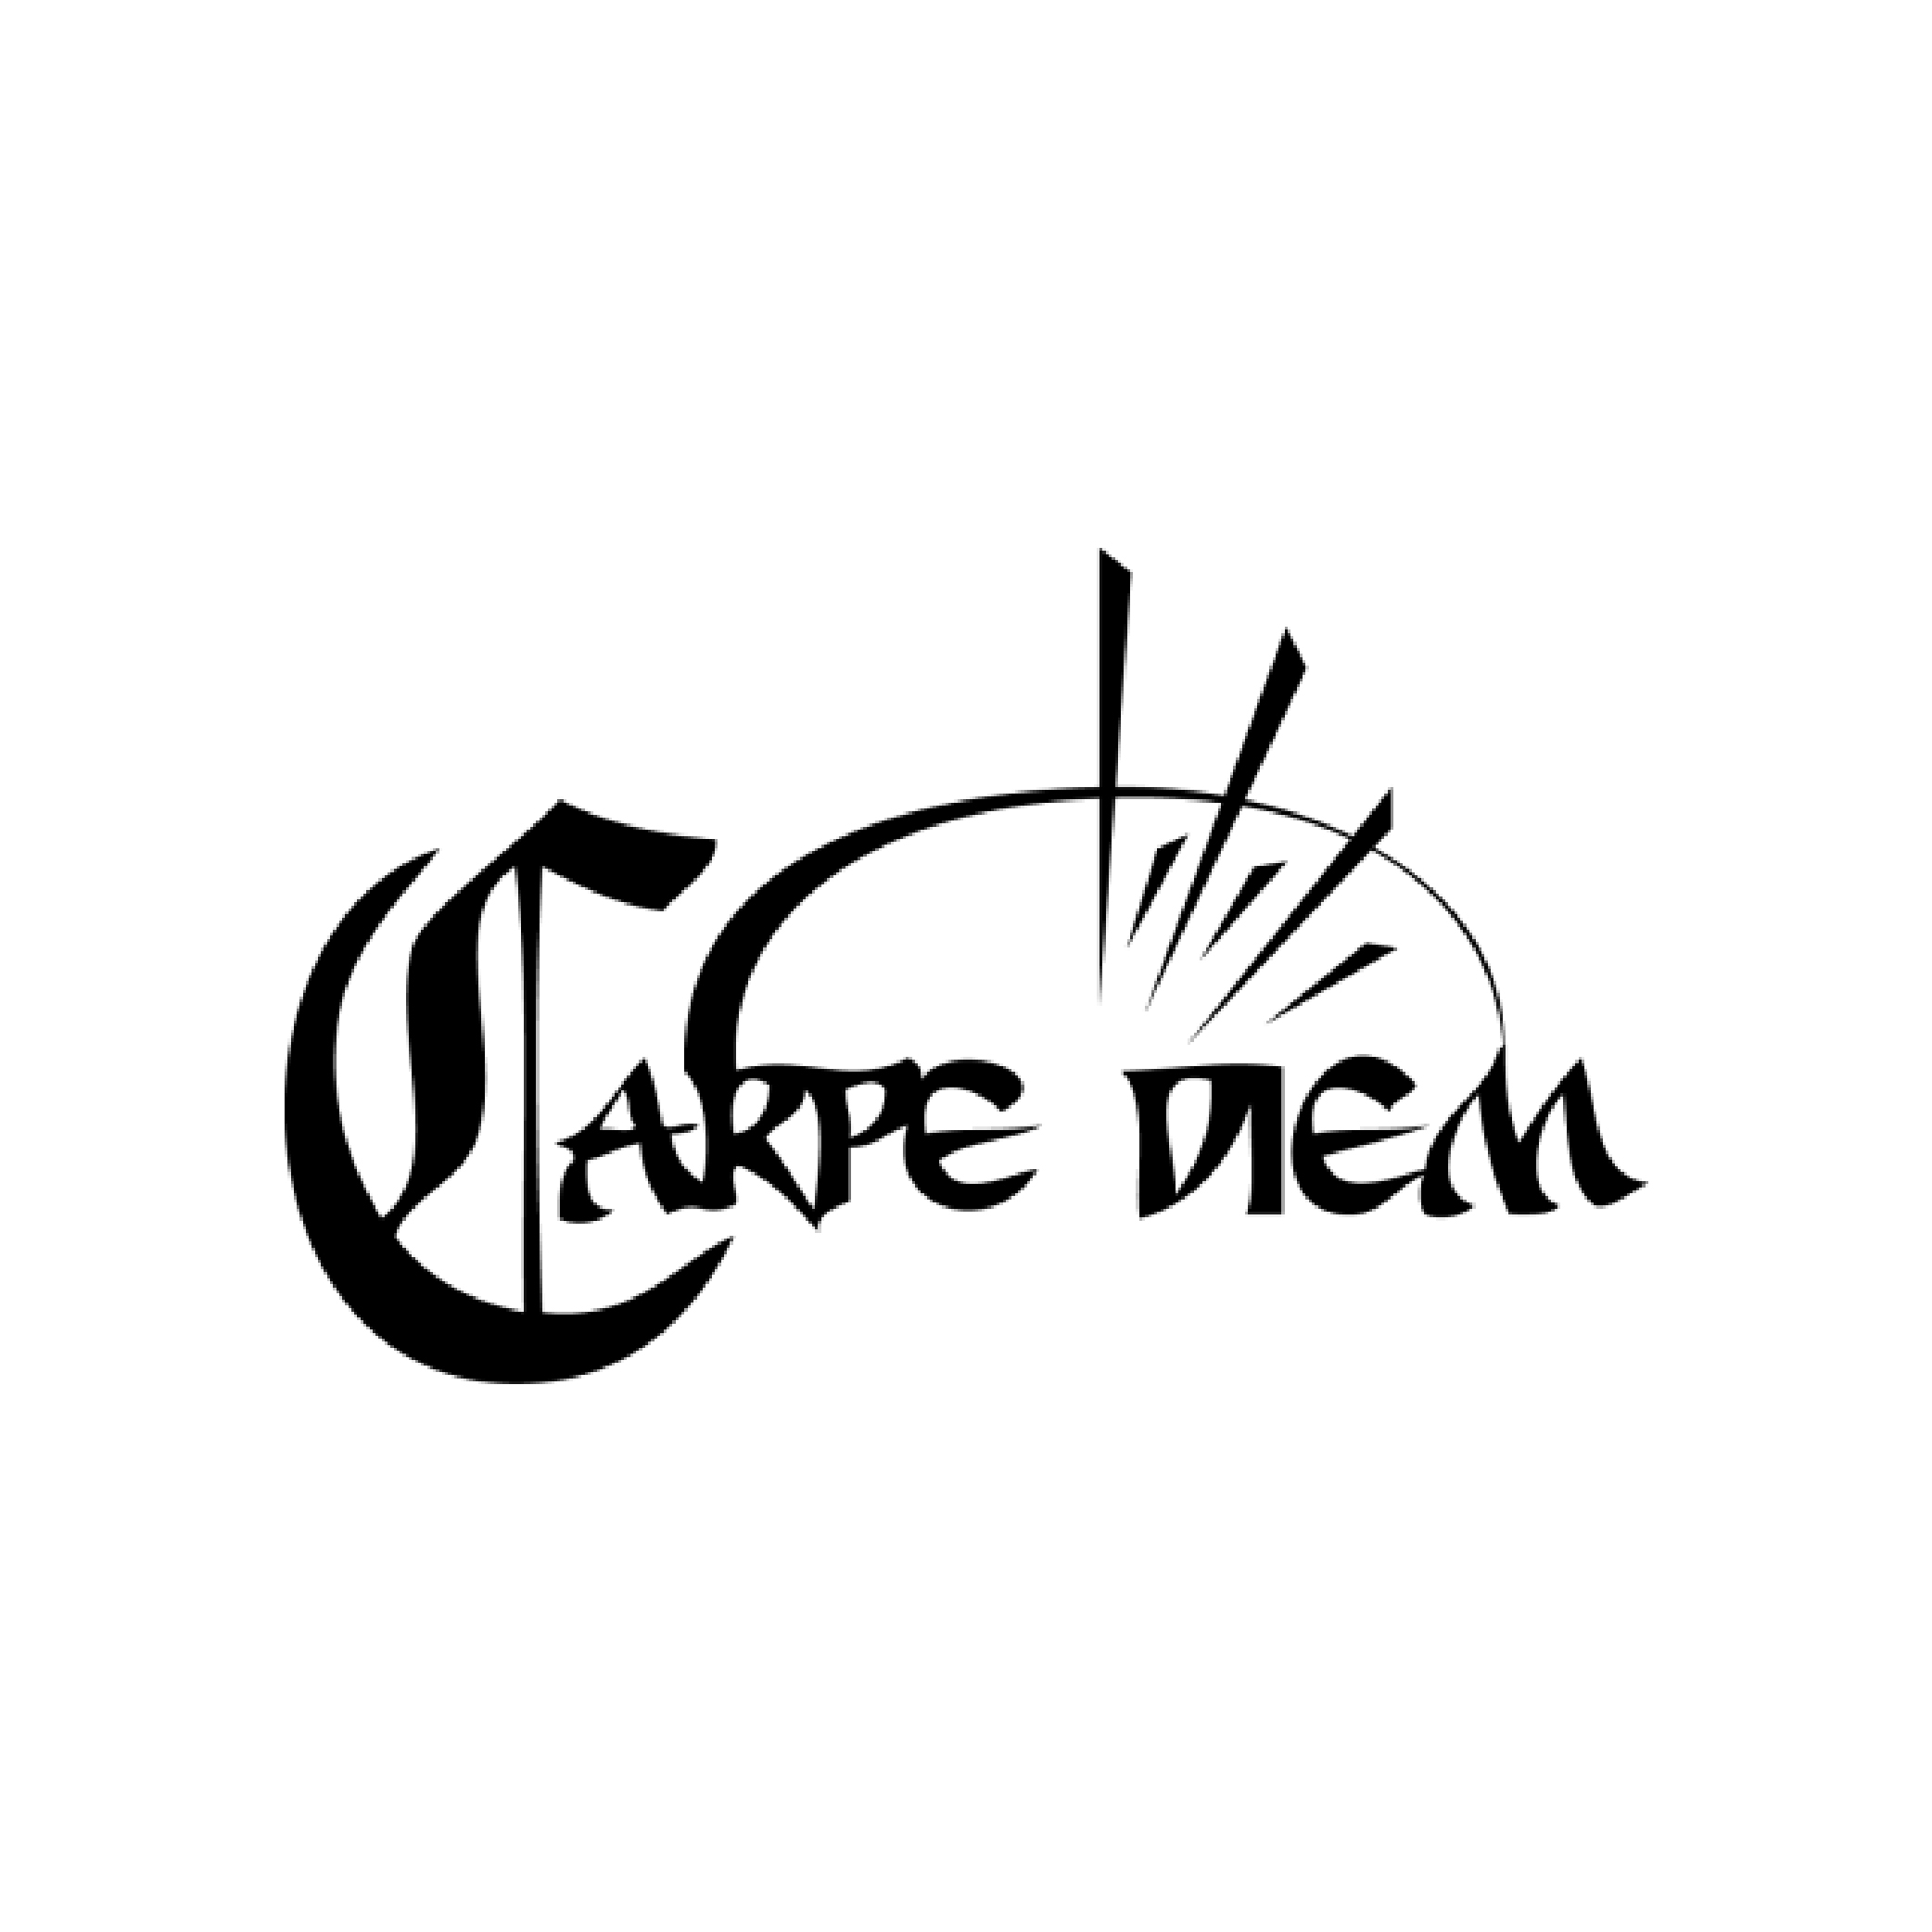 Logotipo Carpe Diem